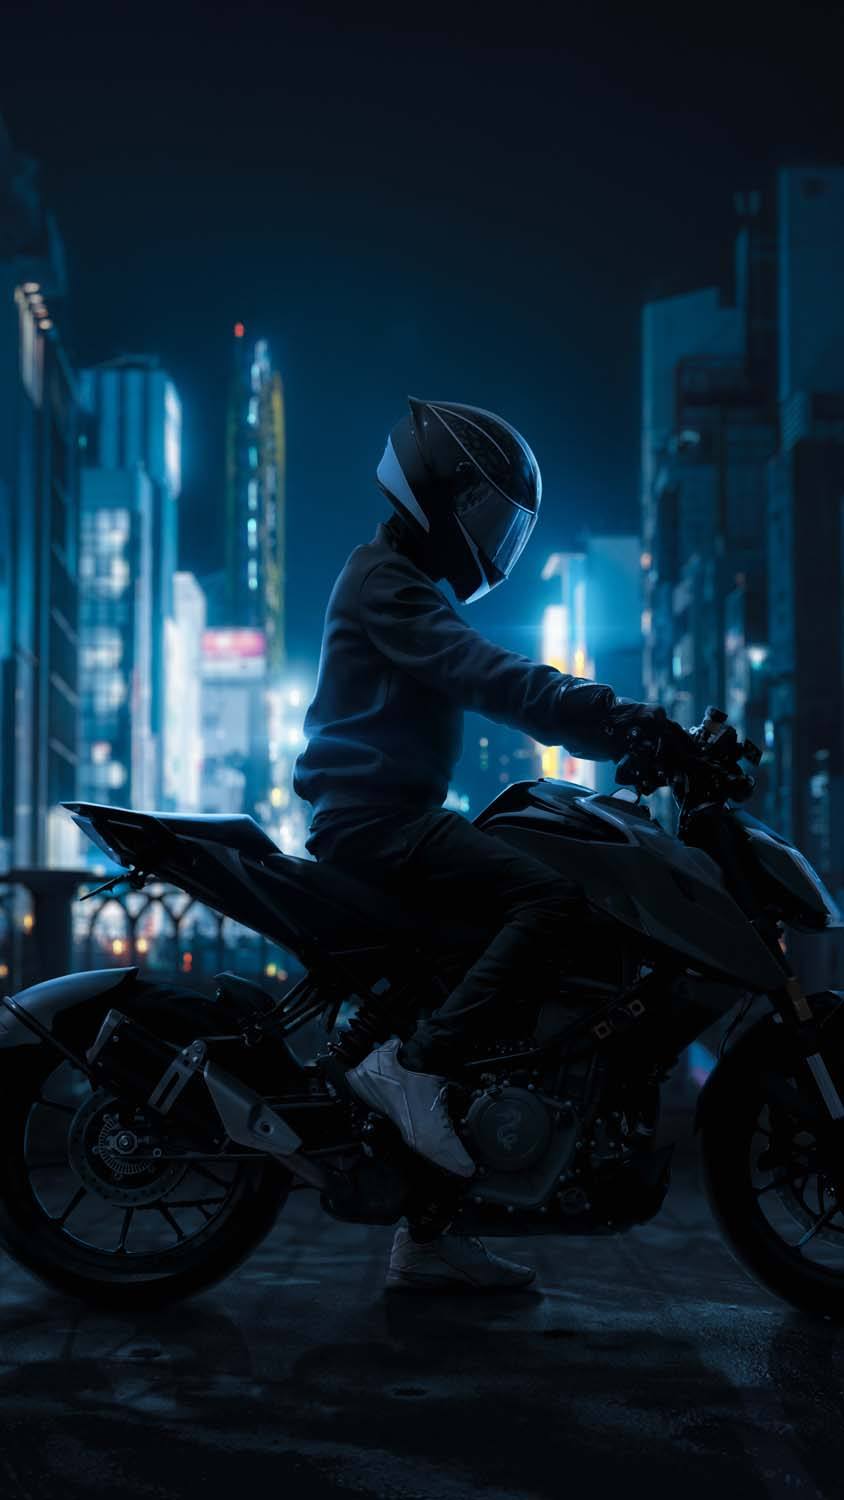 Kawasaki Ninja ZX10R Bike 4K wallpaper download